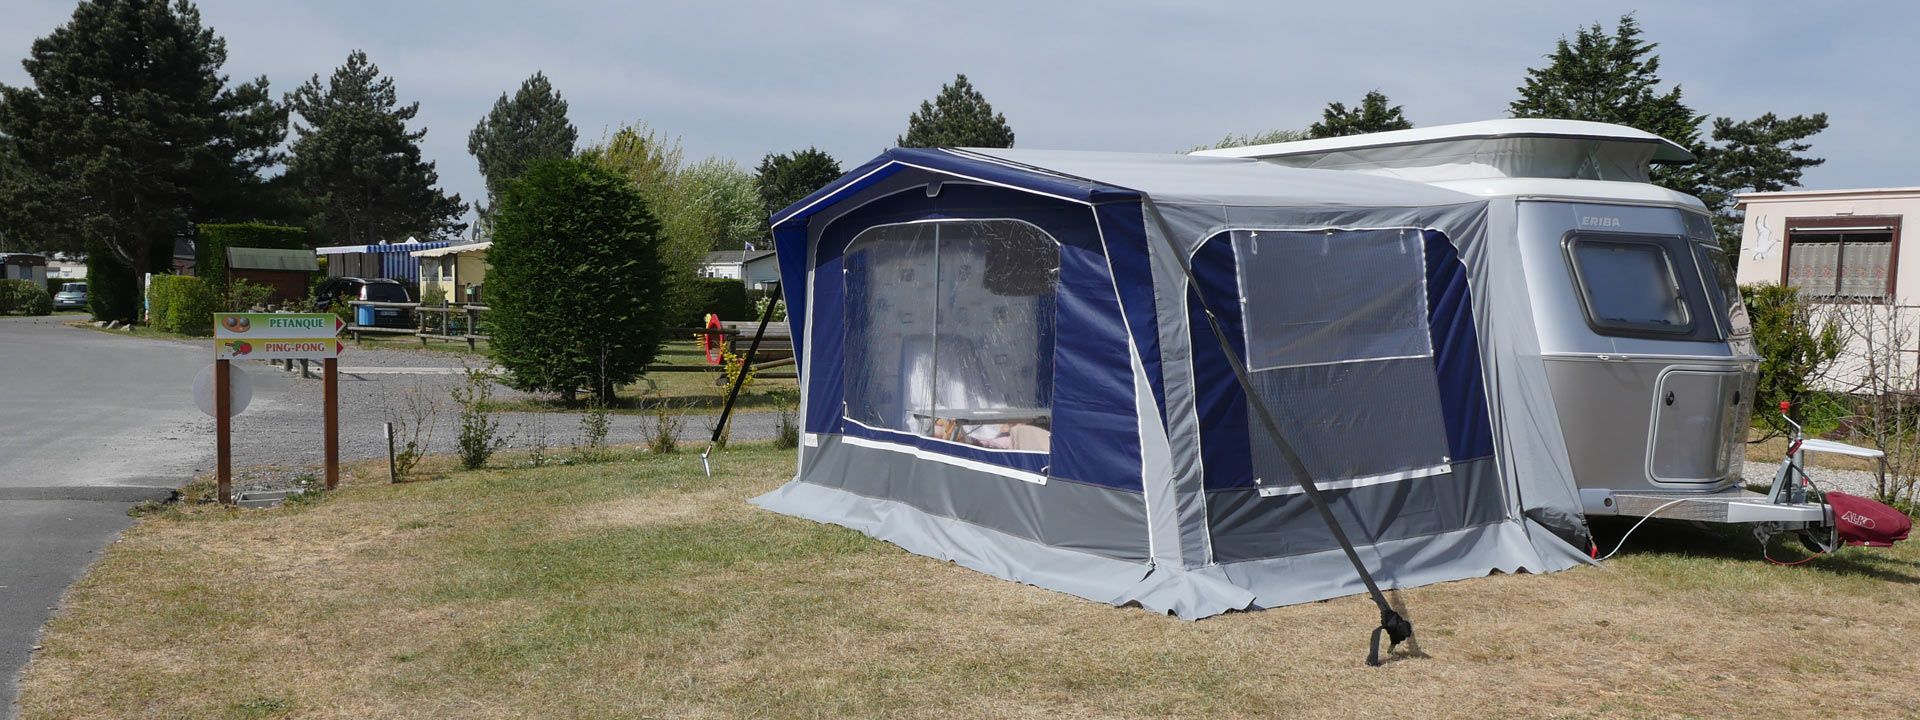 Venez en camping-car, en tente ou caravane dans notre camping dans la Somme